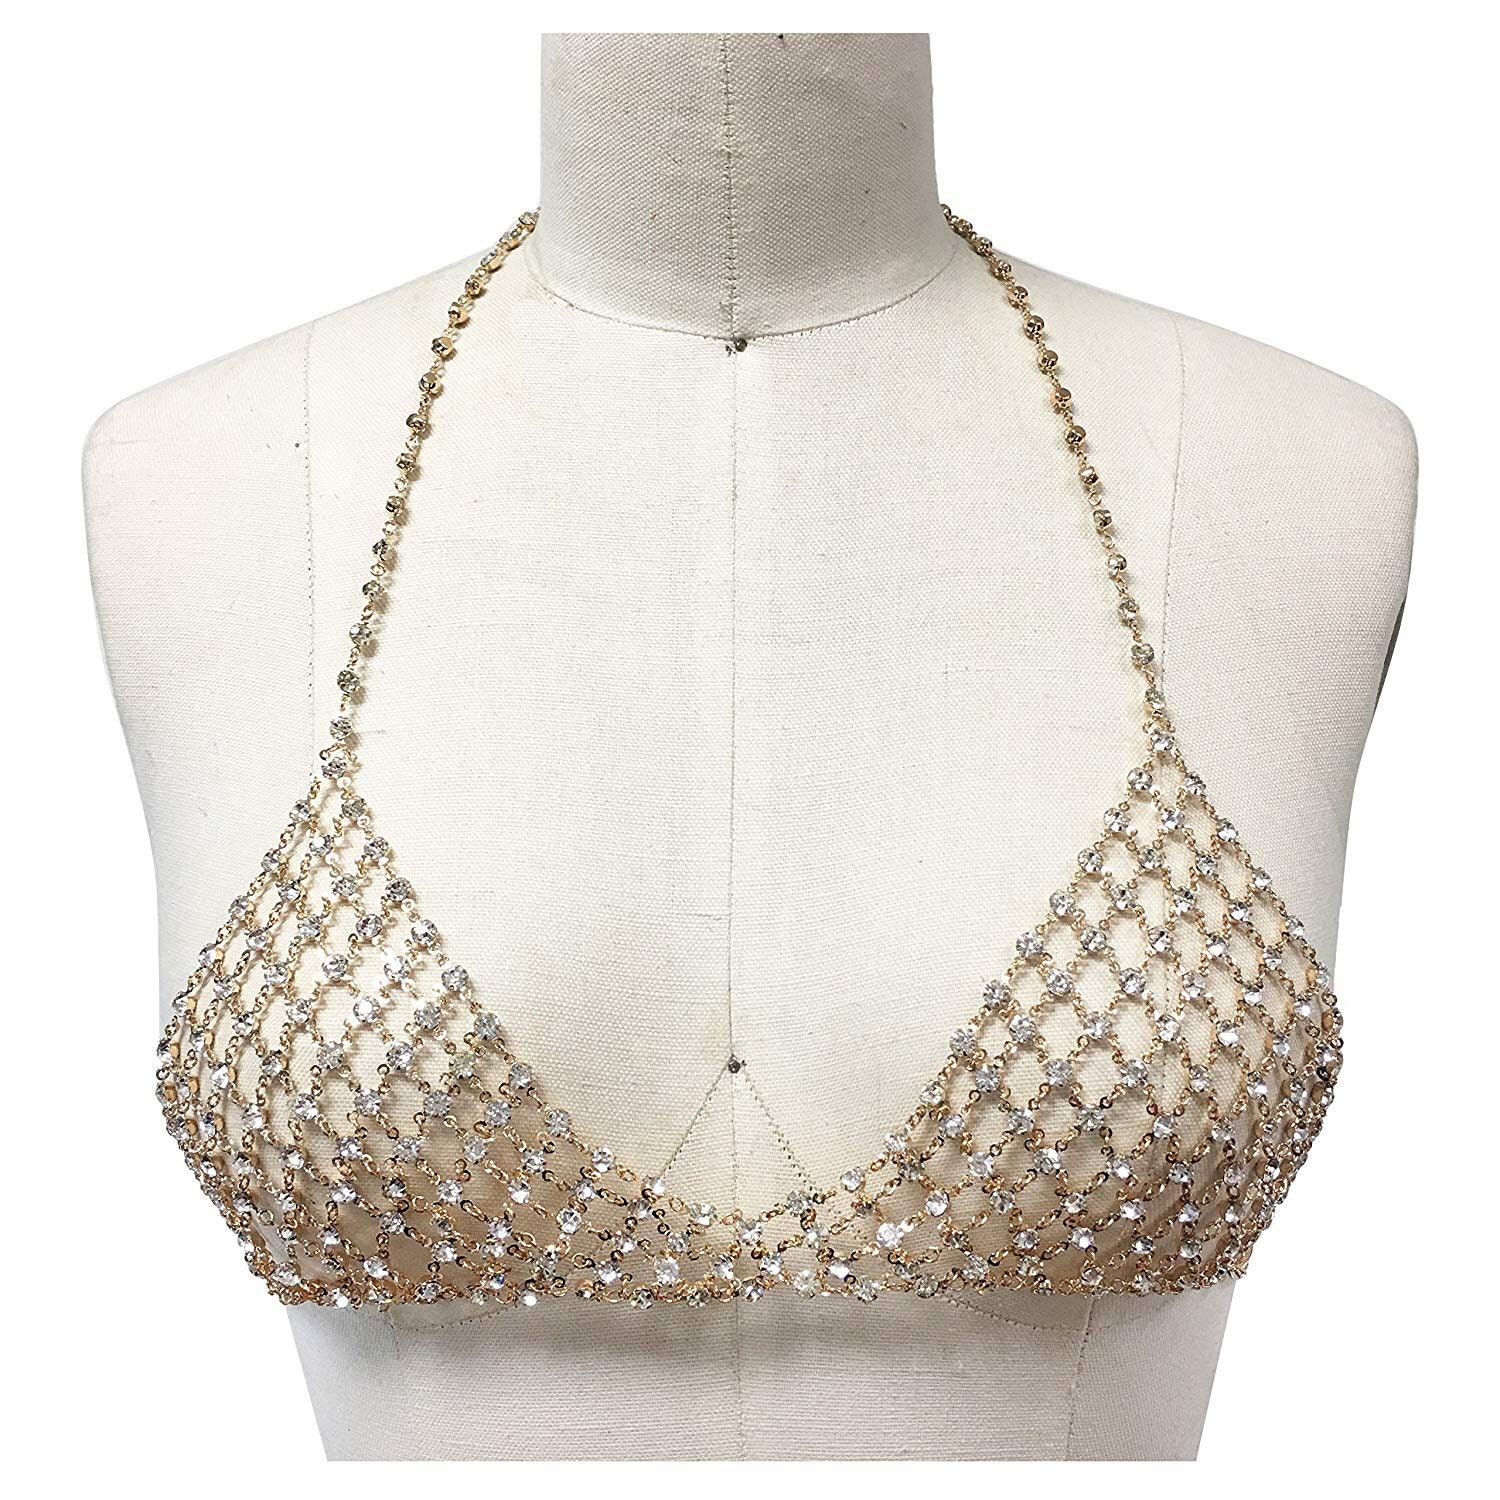 Crystal Rhinestone Bra Chain, Body Jewelry